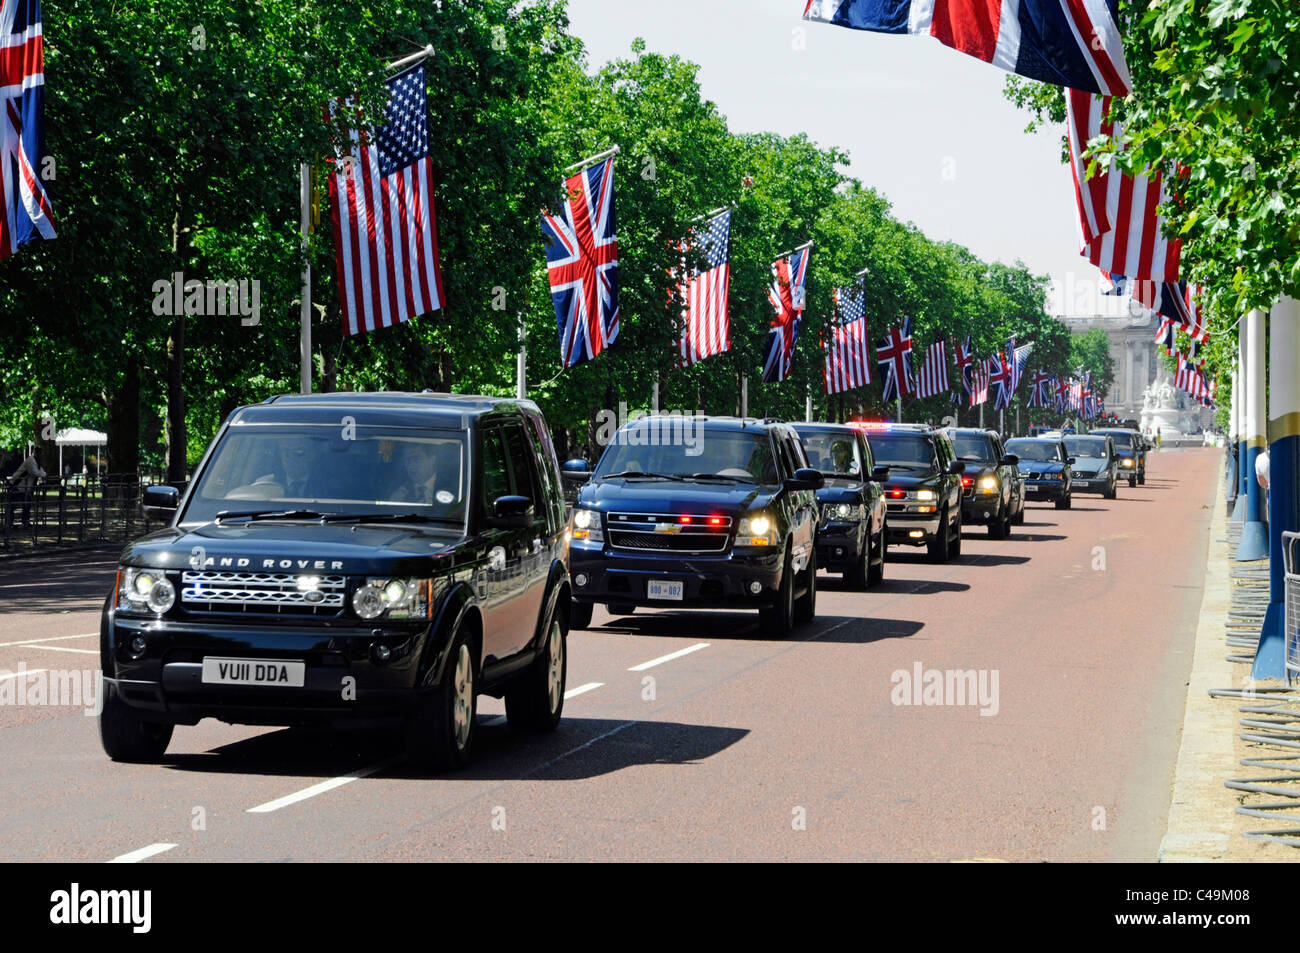 Präsidentenmotorkade der britischen und US-Sicherheitskräfte in der Mall während US-Präsident Obama Staatsbesuch Union Jack Flagge Amerikanische Flaggen London England Großbritannien Stockfoto